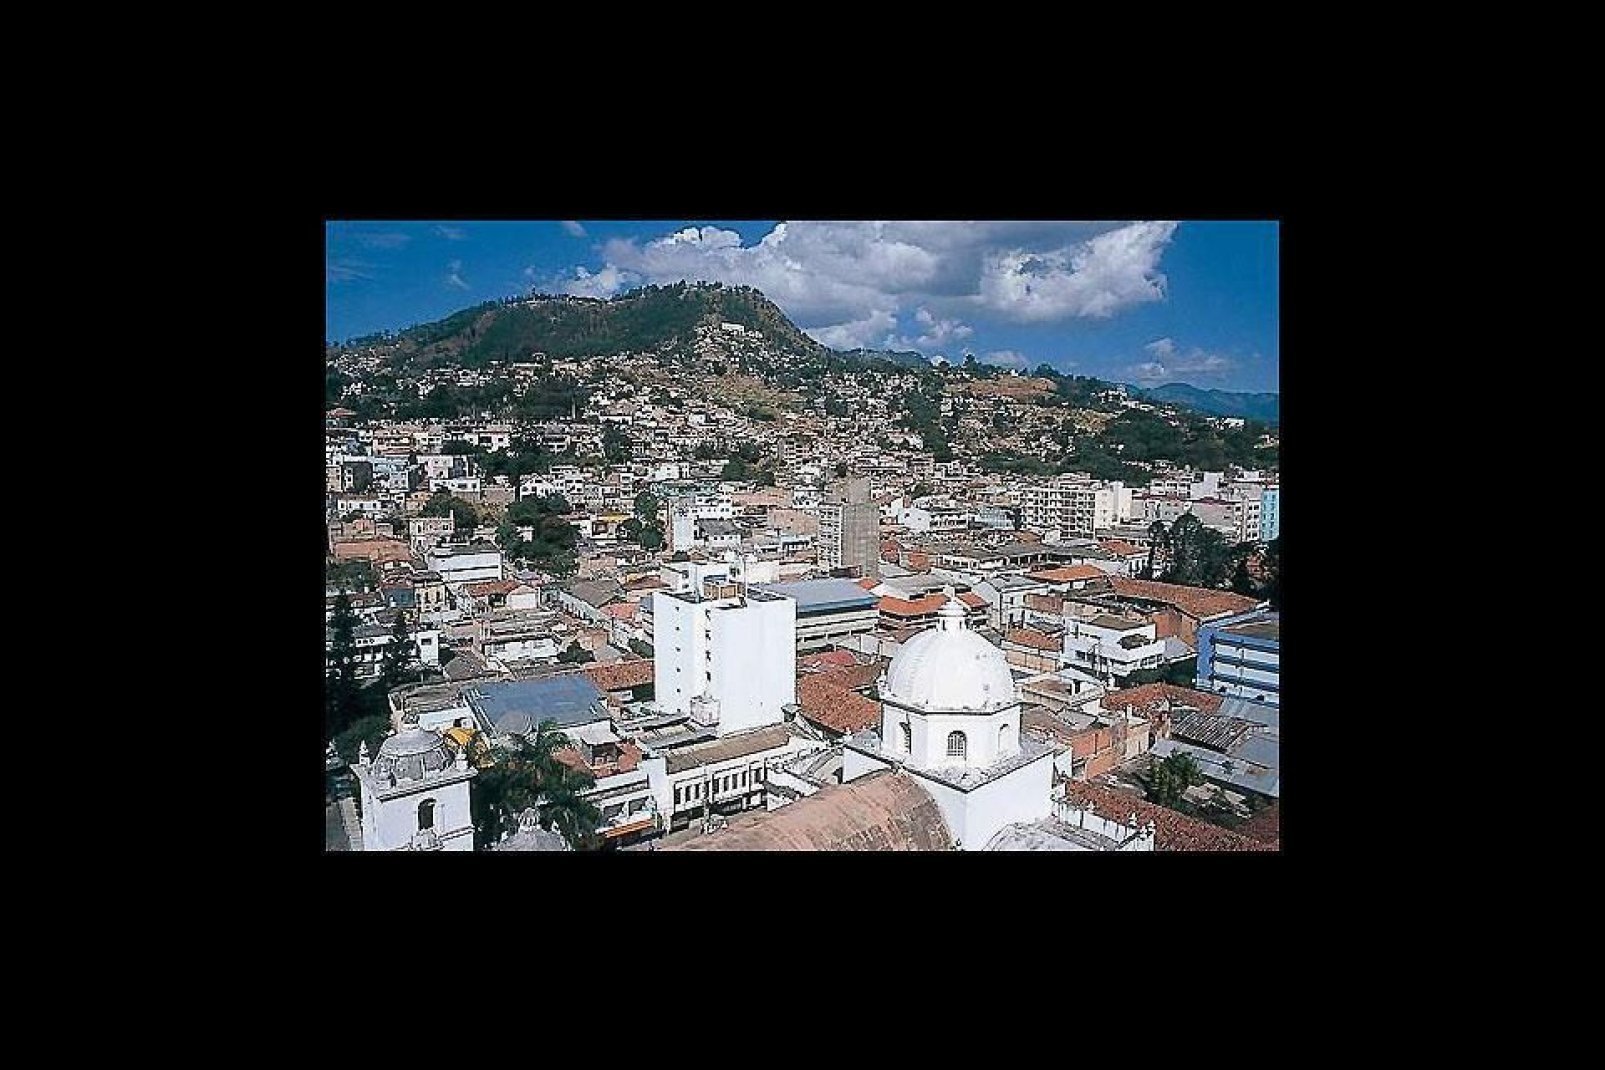 Tegucigalpa es la capital de Honduras. Posee un pequeño centro histórico, pero sigue siendo una ciudad bastante pobre.